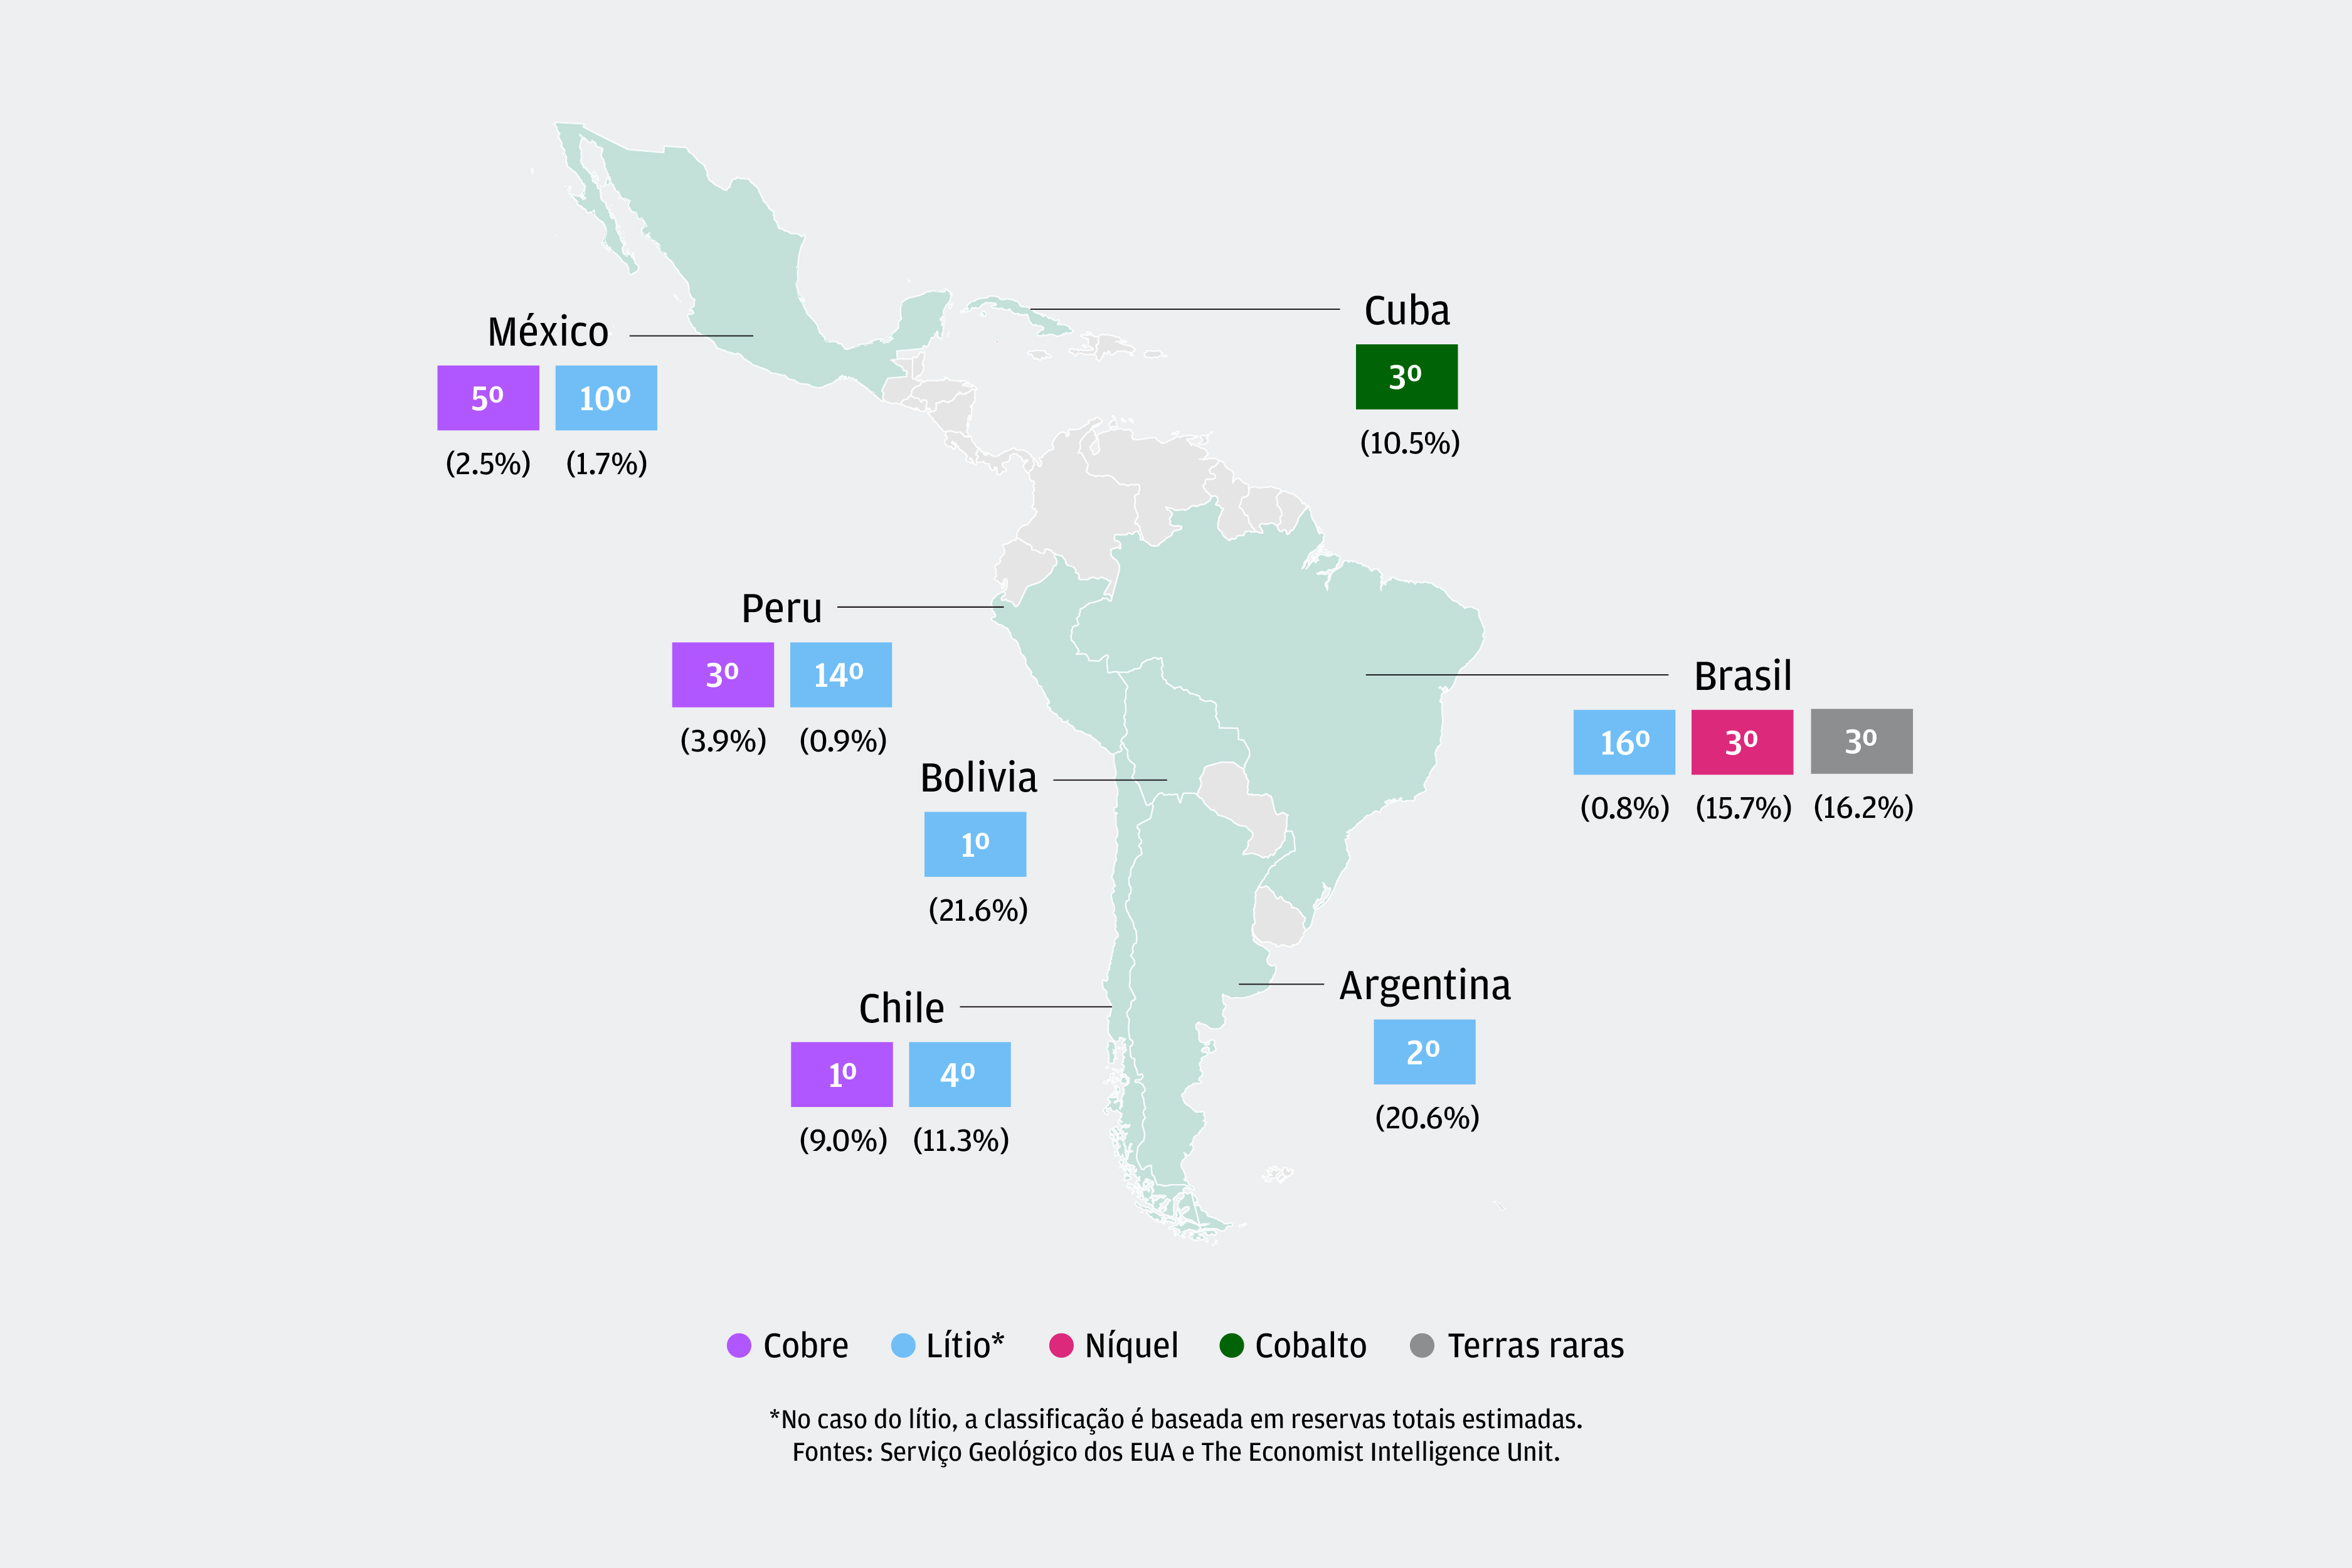 O gráfico apresenta um mapa da América Central e América do Sul com a classificação global e a % das reservas comprovadas globais de minerais críticos (cobalto, cobre, lítio, níquel, elementos de terras raras) destacados para os seguintes países: México, Cuba, Brasil, Peru, Bolívia, Chile e Argentina.